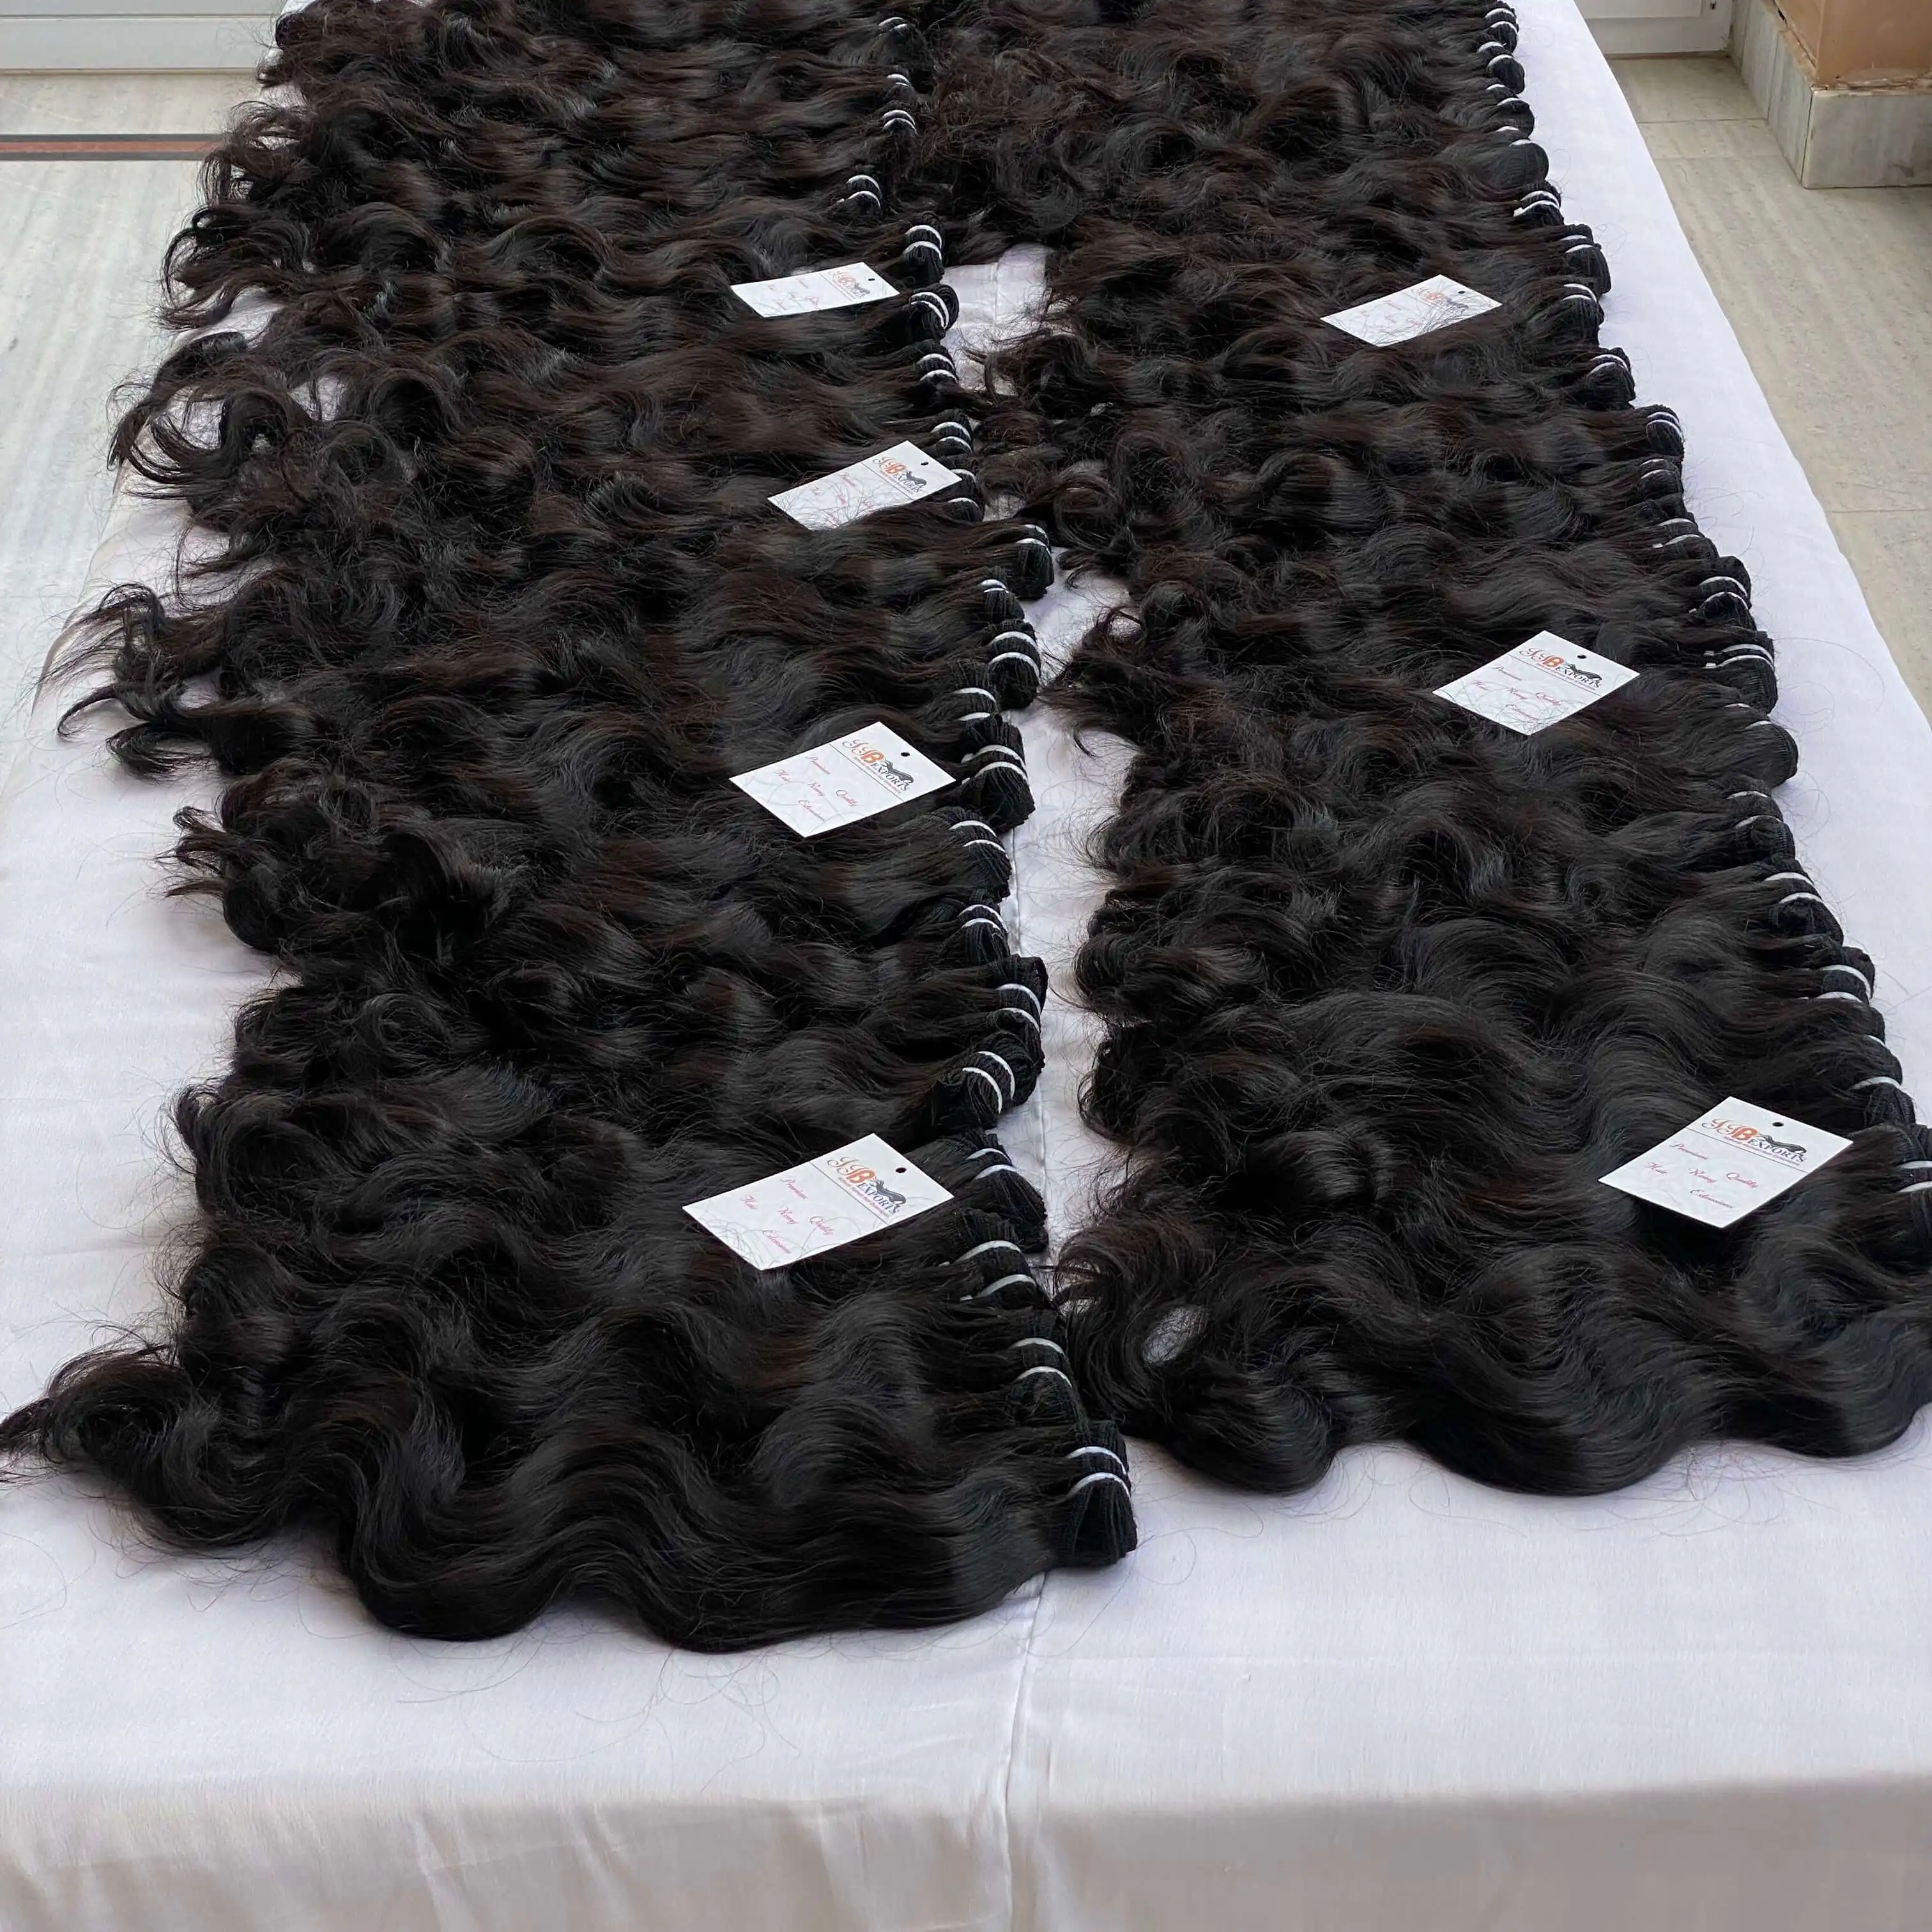 Capelli umani indiani dritti dell'osso, capelli umani ondulati allineati cuticola vergine di remy, fornitori di capelli umani di trama della macchina birmana grezza